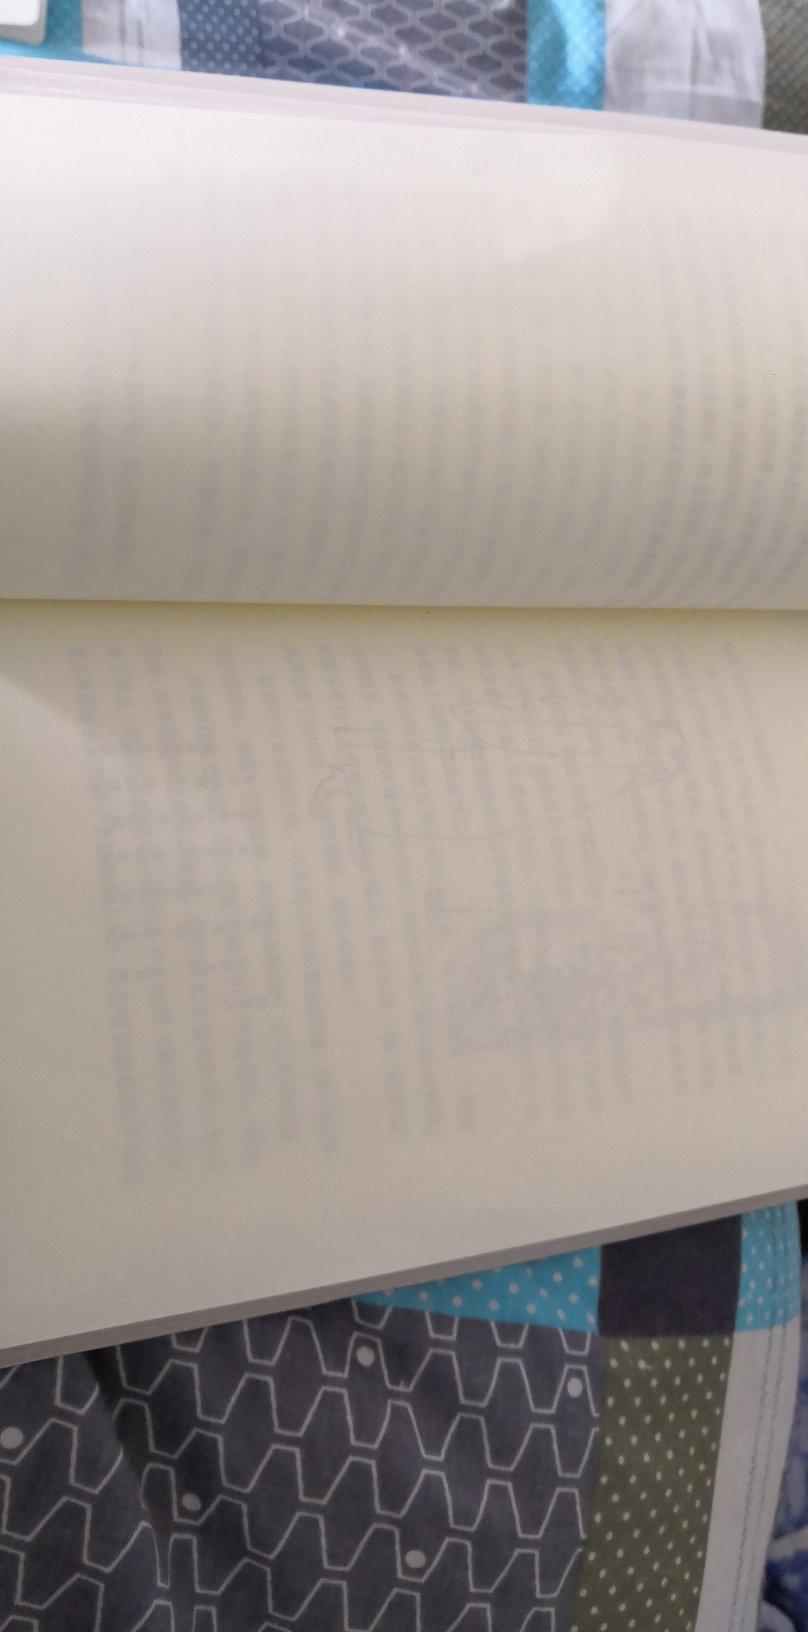 这本书里漏印了2页